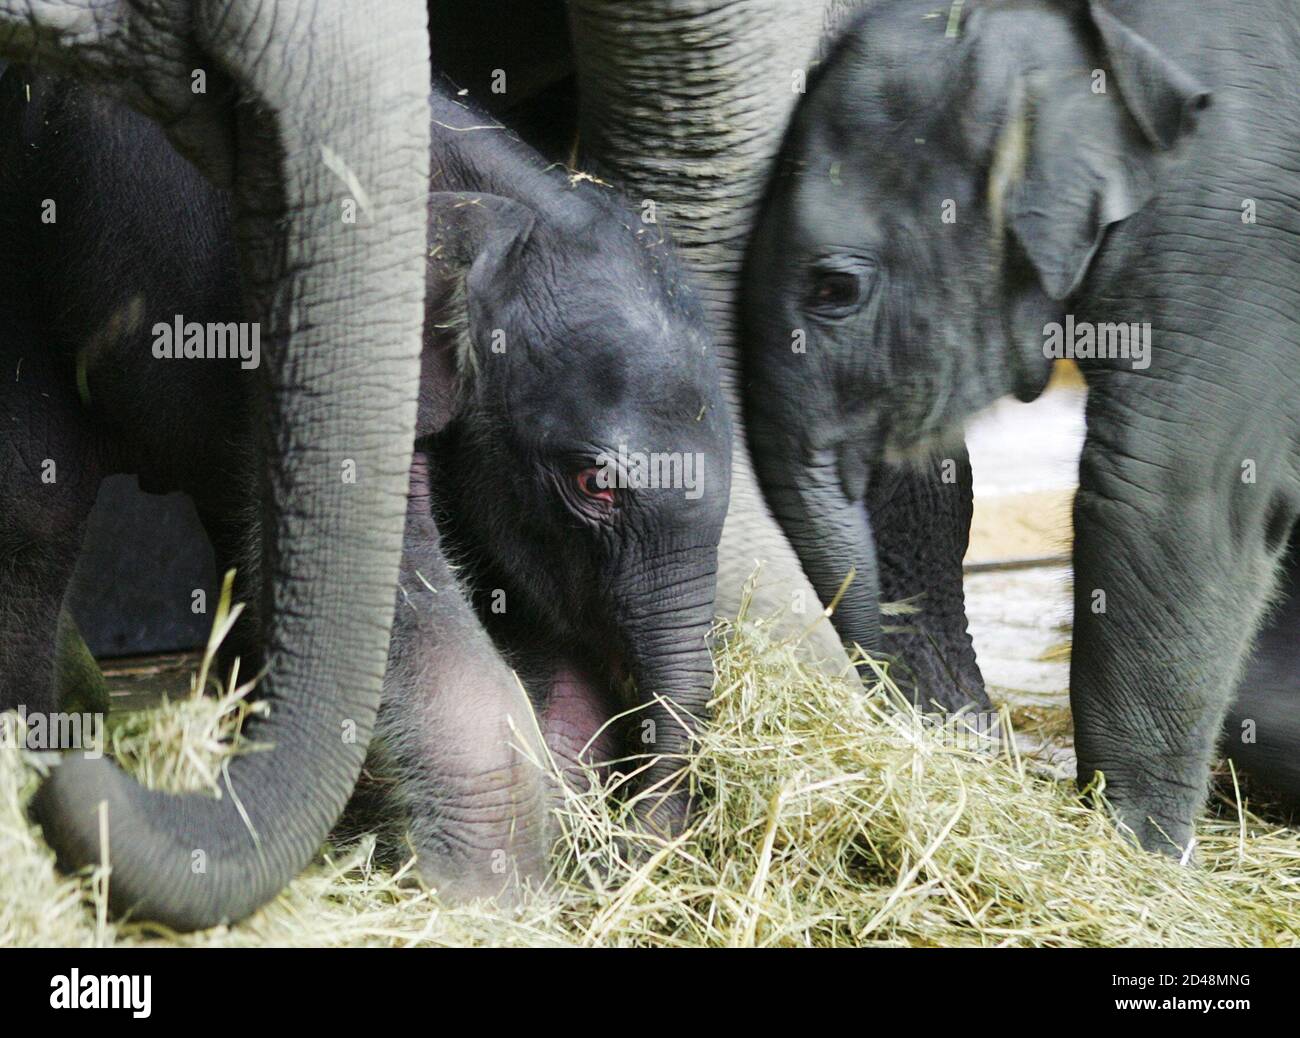 Zoo Zürich Elefant Stockfotos und -bilder Kaufen - Alamy